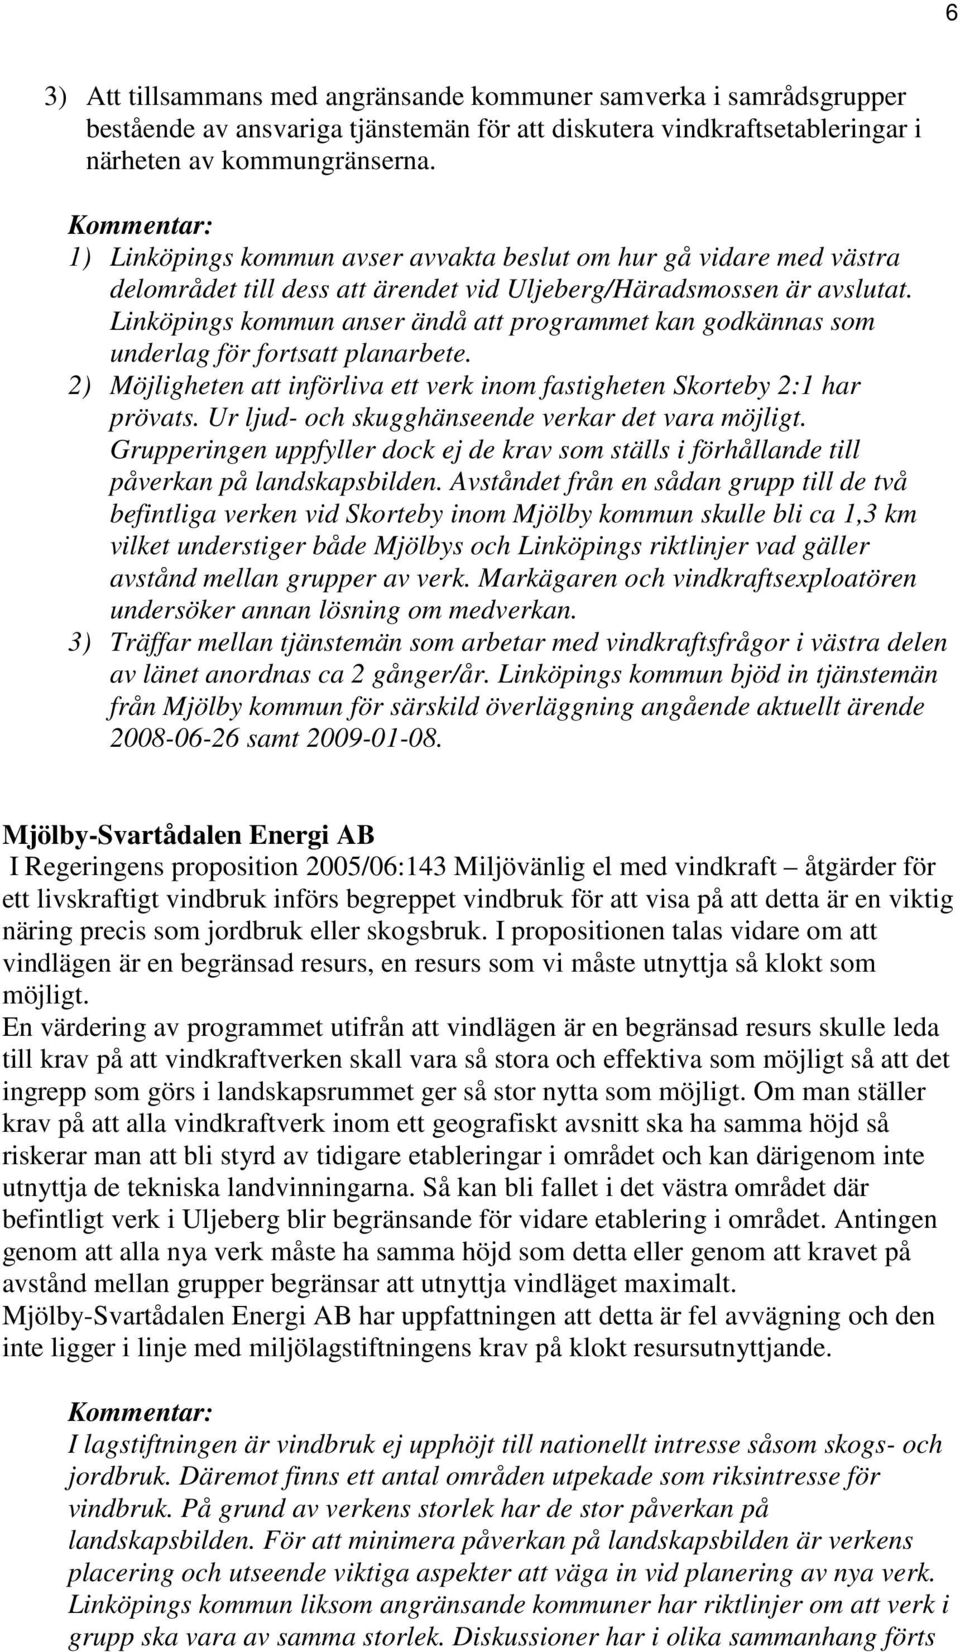 Linköpings kommun anser ändå att programmet kan godkännas som underlag för fortsatt planarbete. 2) Möjligheten att införliva ett verk inom fastigheten Skorteby 2:1 har prövats.